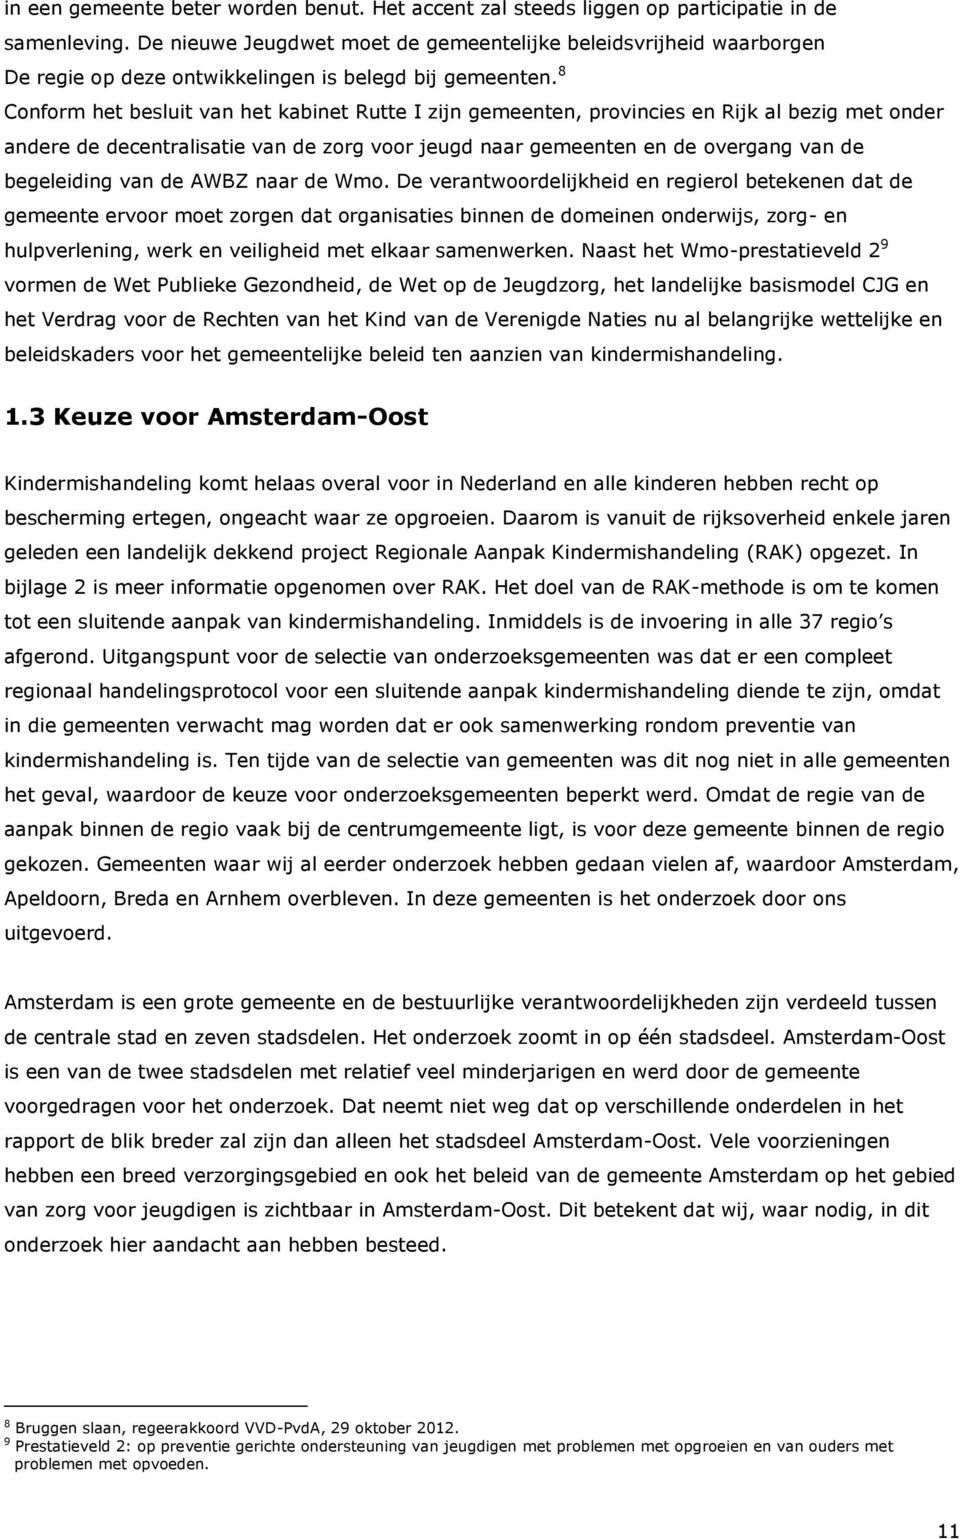 8 Conform het besluit van het kabinet Rutte I zijn gemeenten, provincies en Rijk al bezig met onder andere de decentralisatie van de zorg voor jeugd naar gemeenten en de overgang van de begeleiding